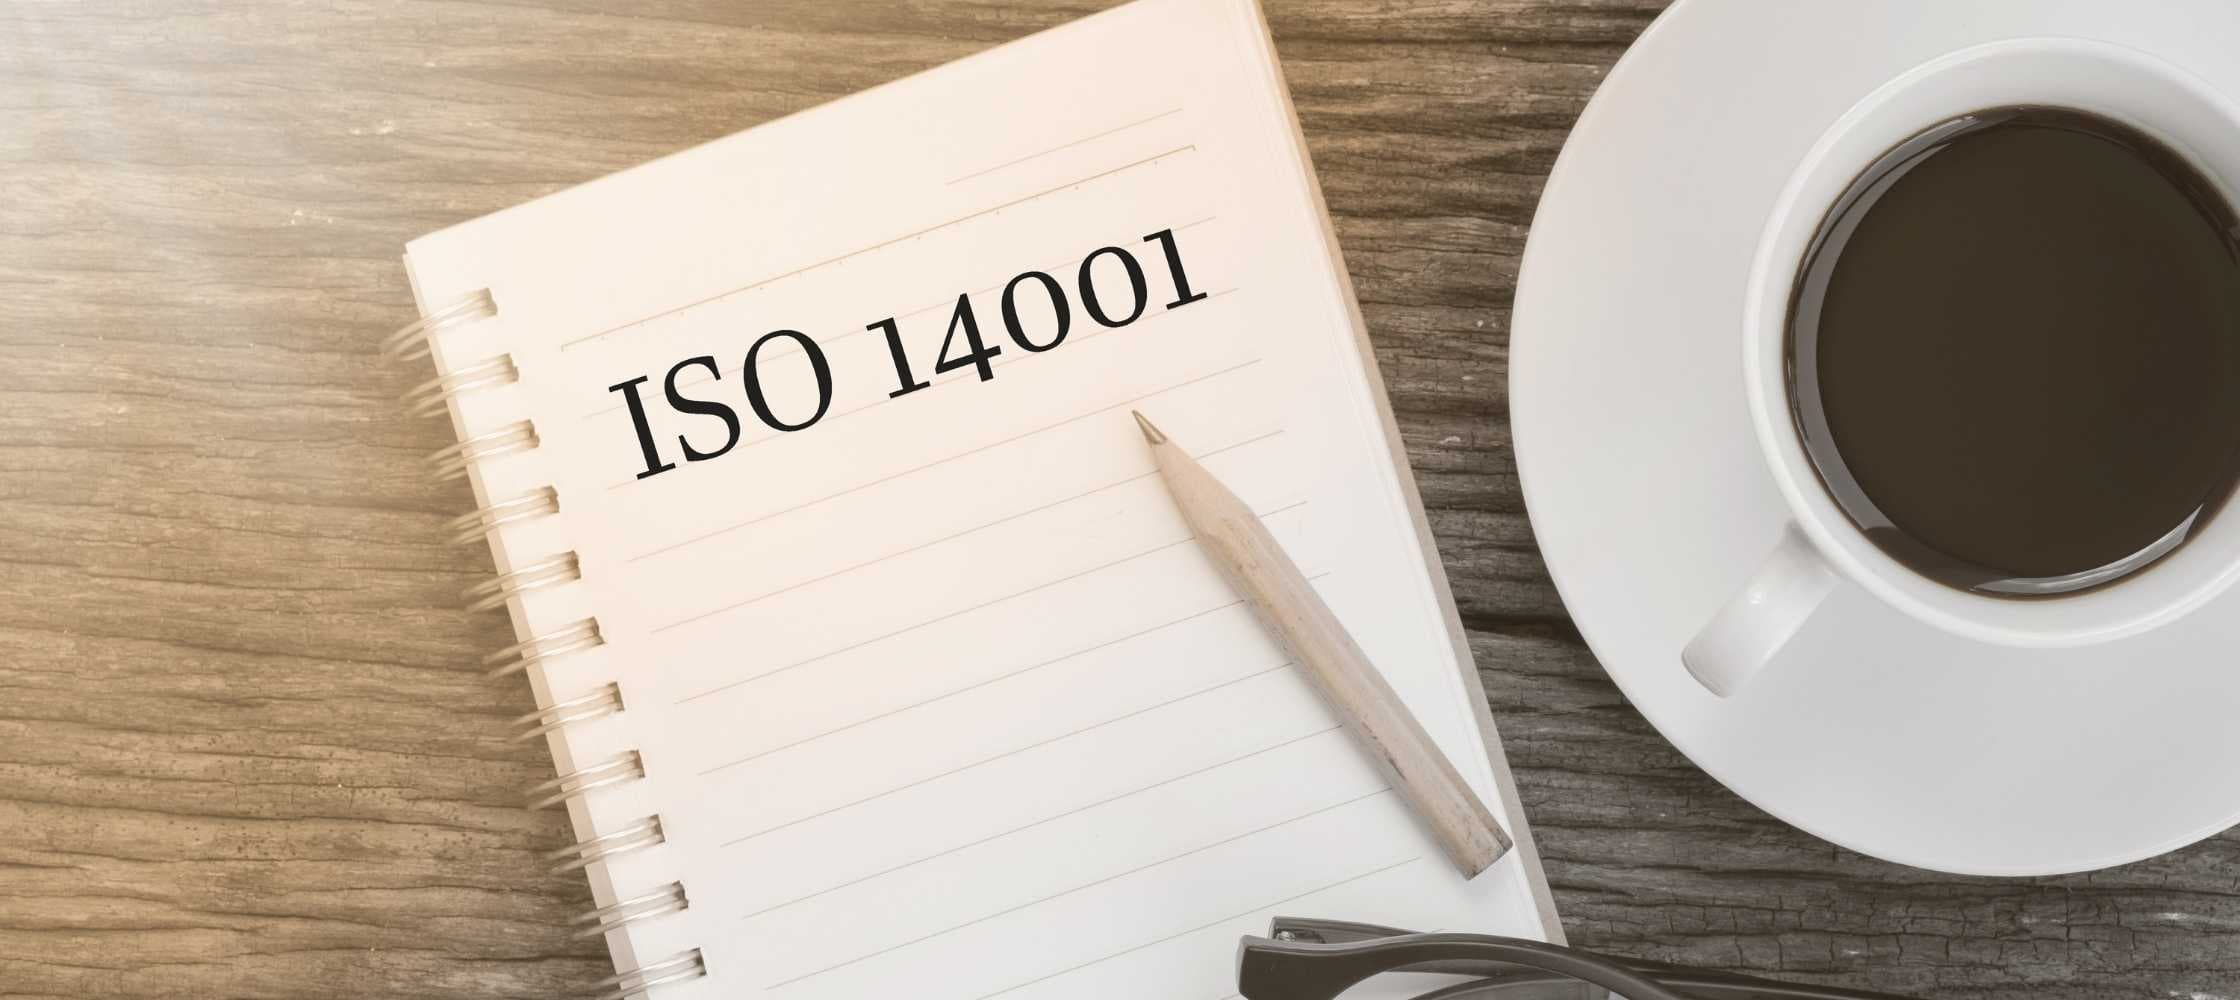 Formation ISO 14001 à Bordeaux